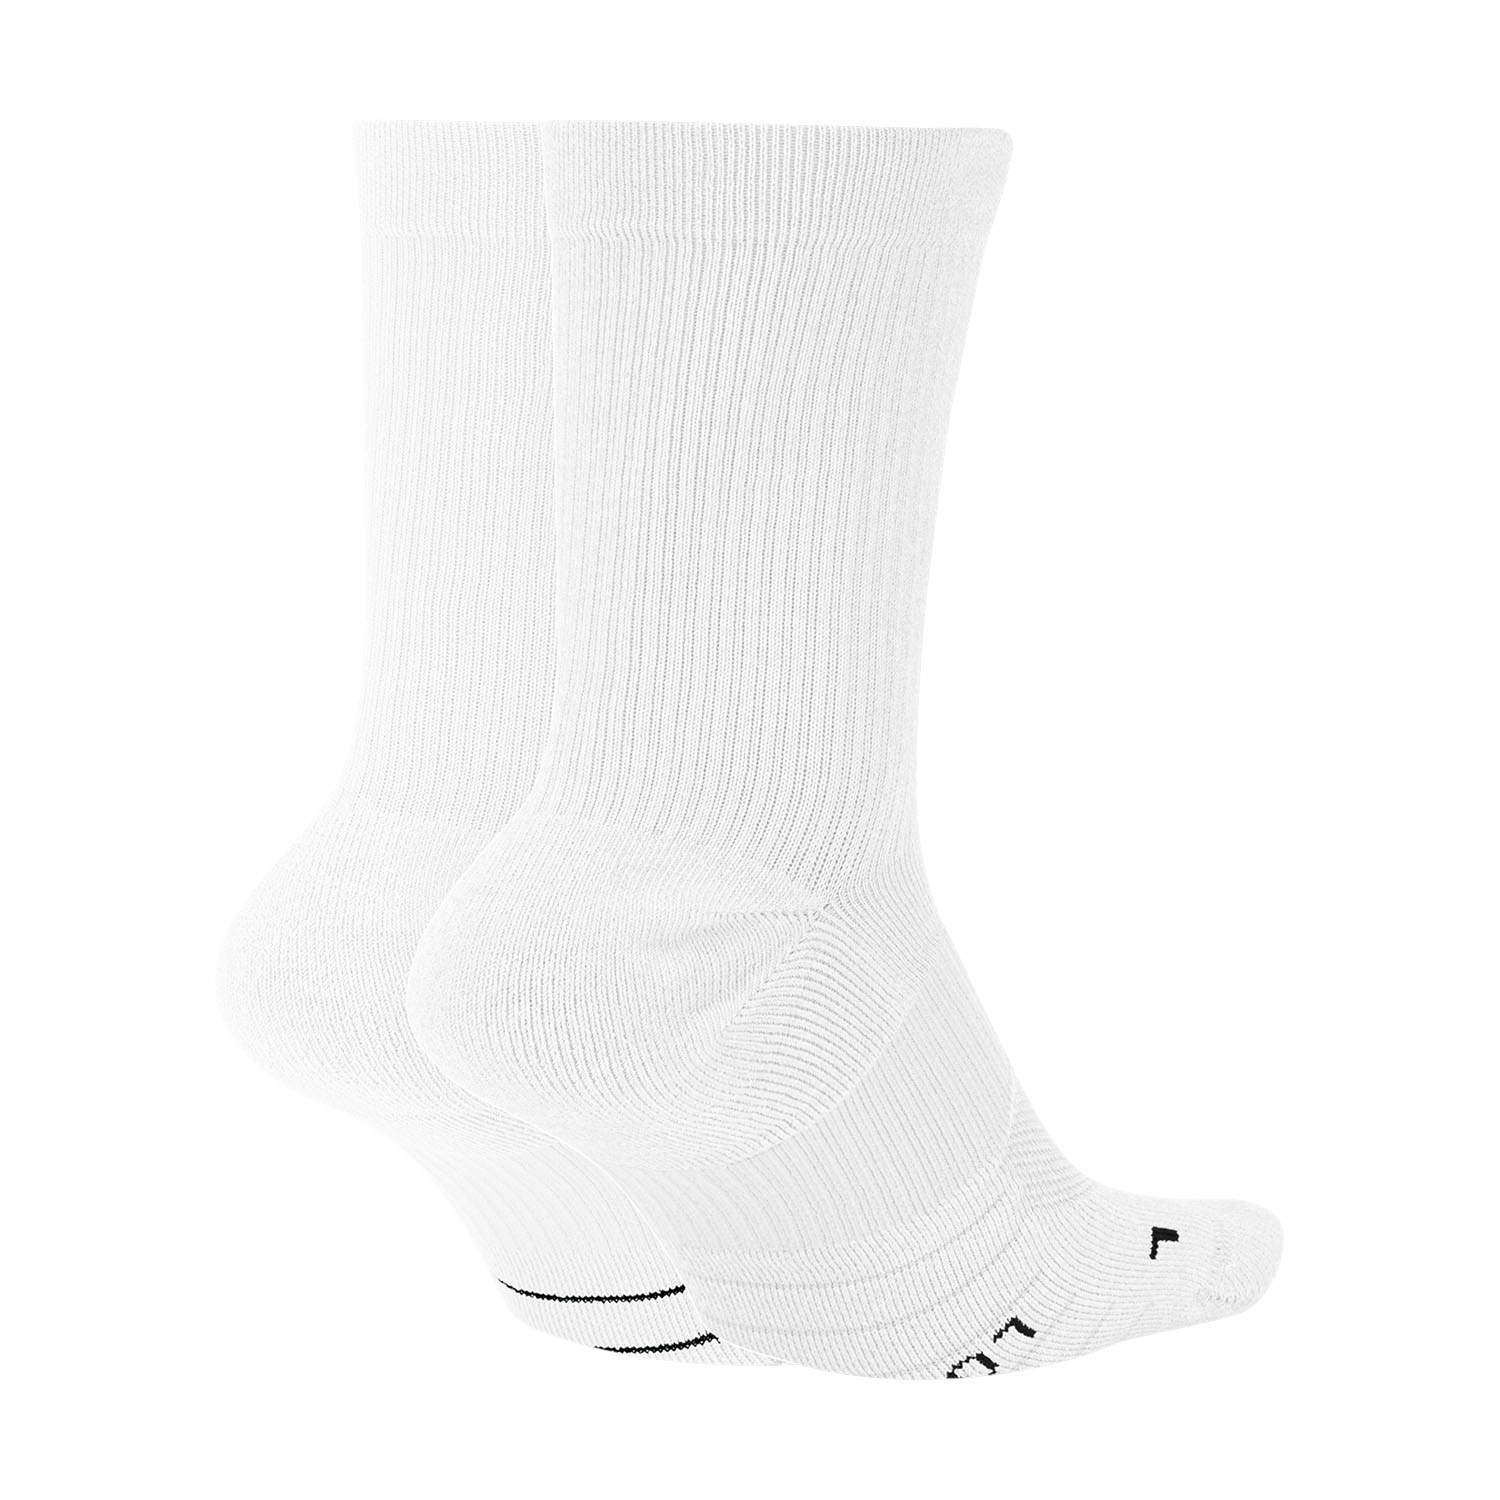 Nike Dri-FIT Multiplier Crew x 2 Running Socks - White/Black